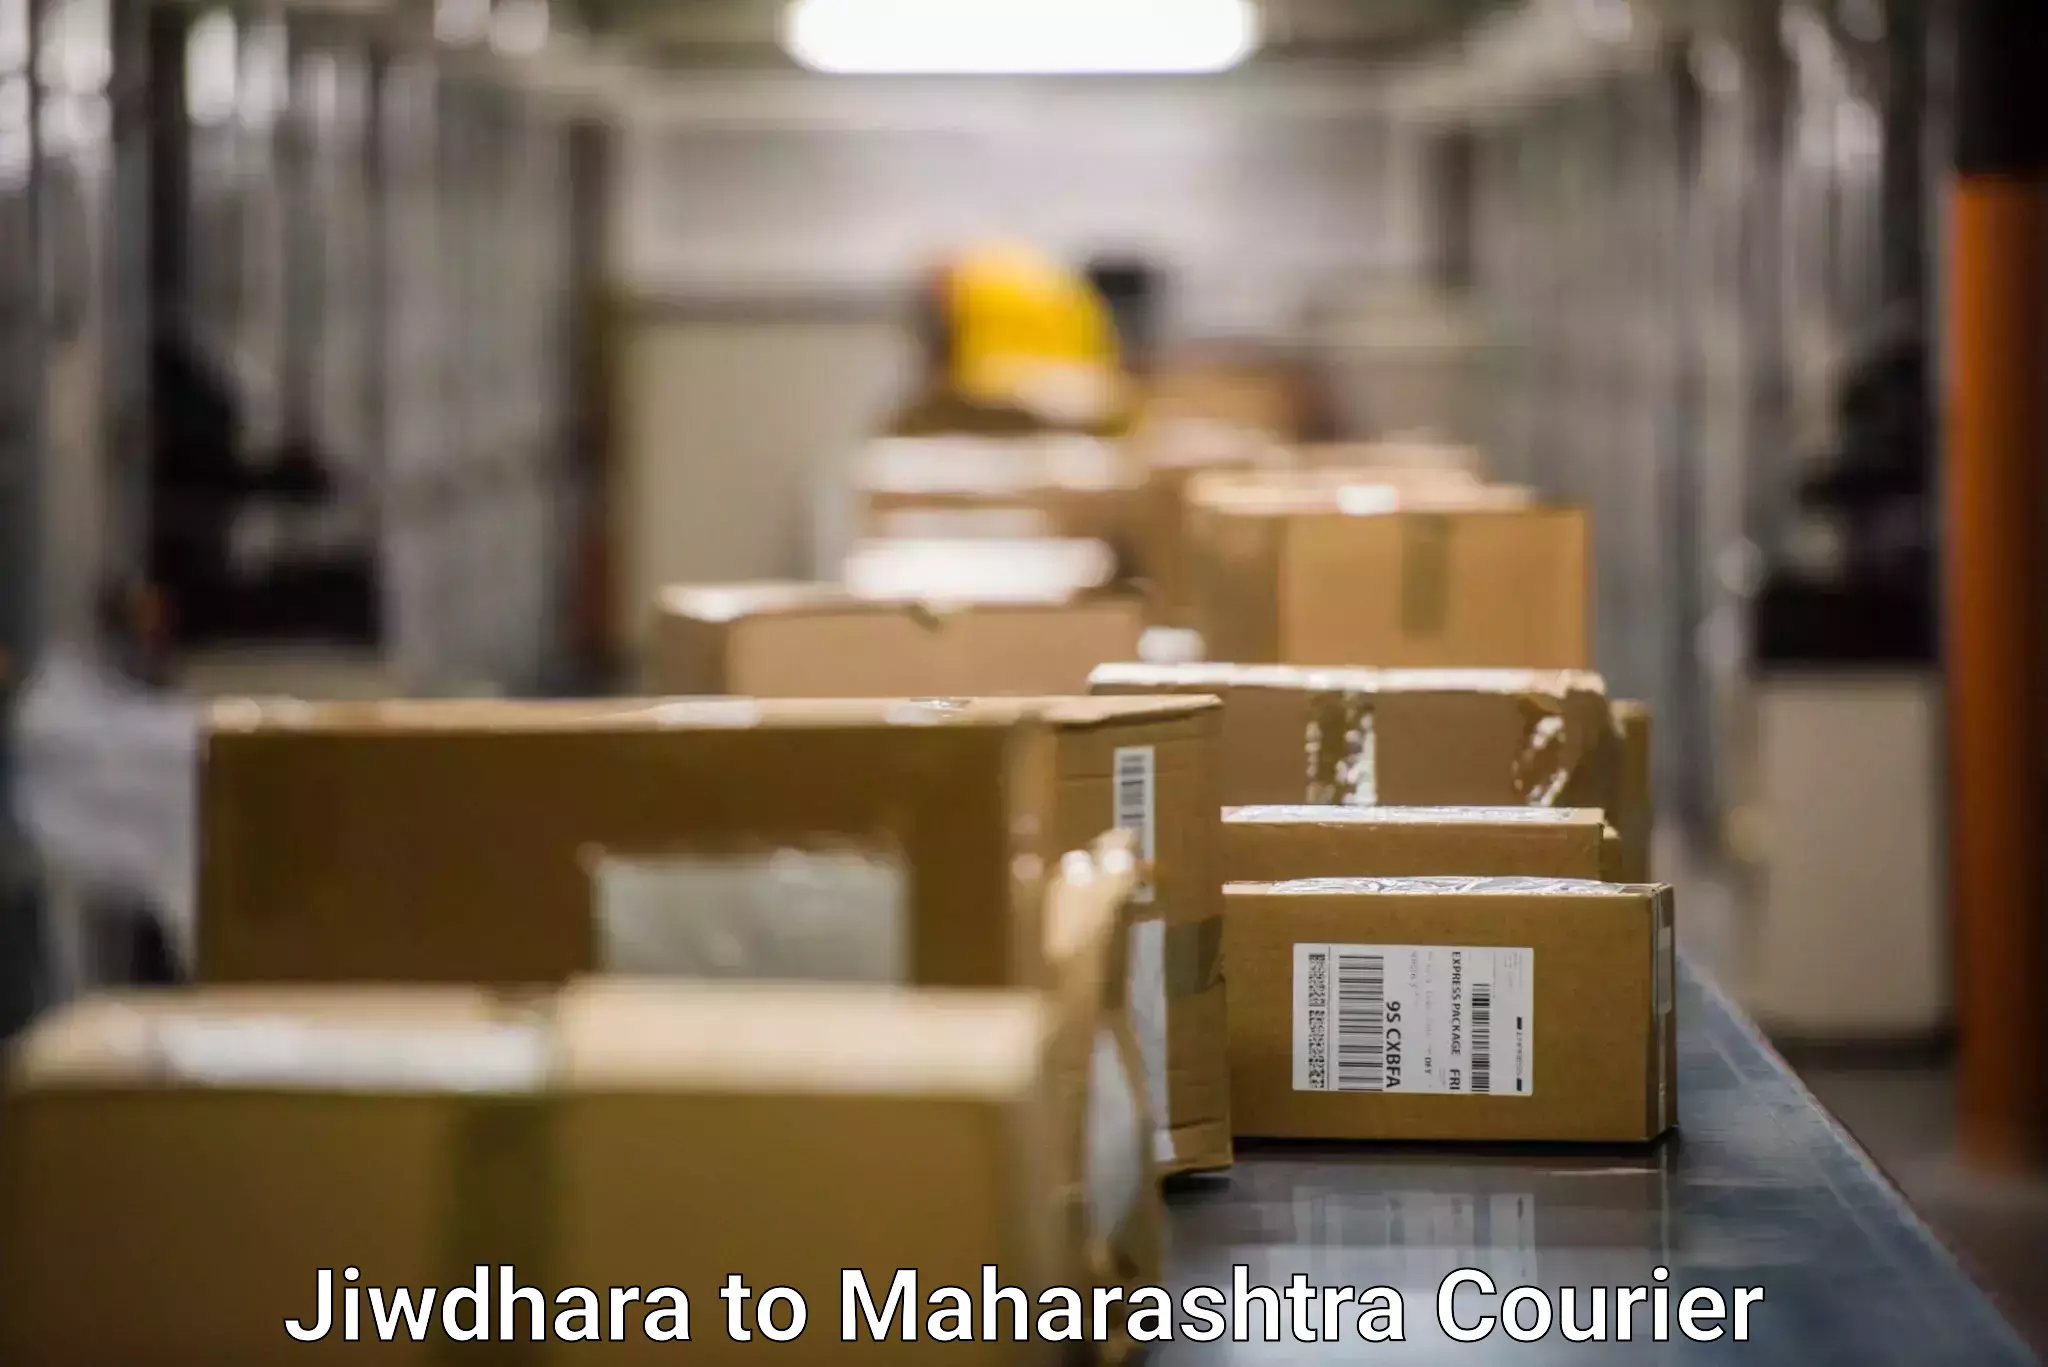 Ground shipping Jiwdhara to Andheri